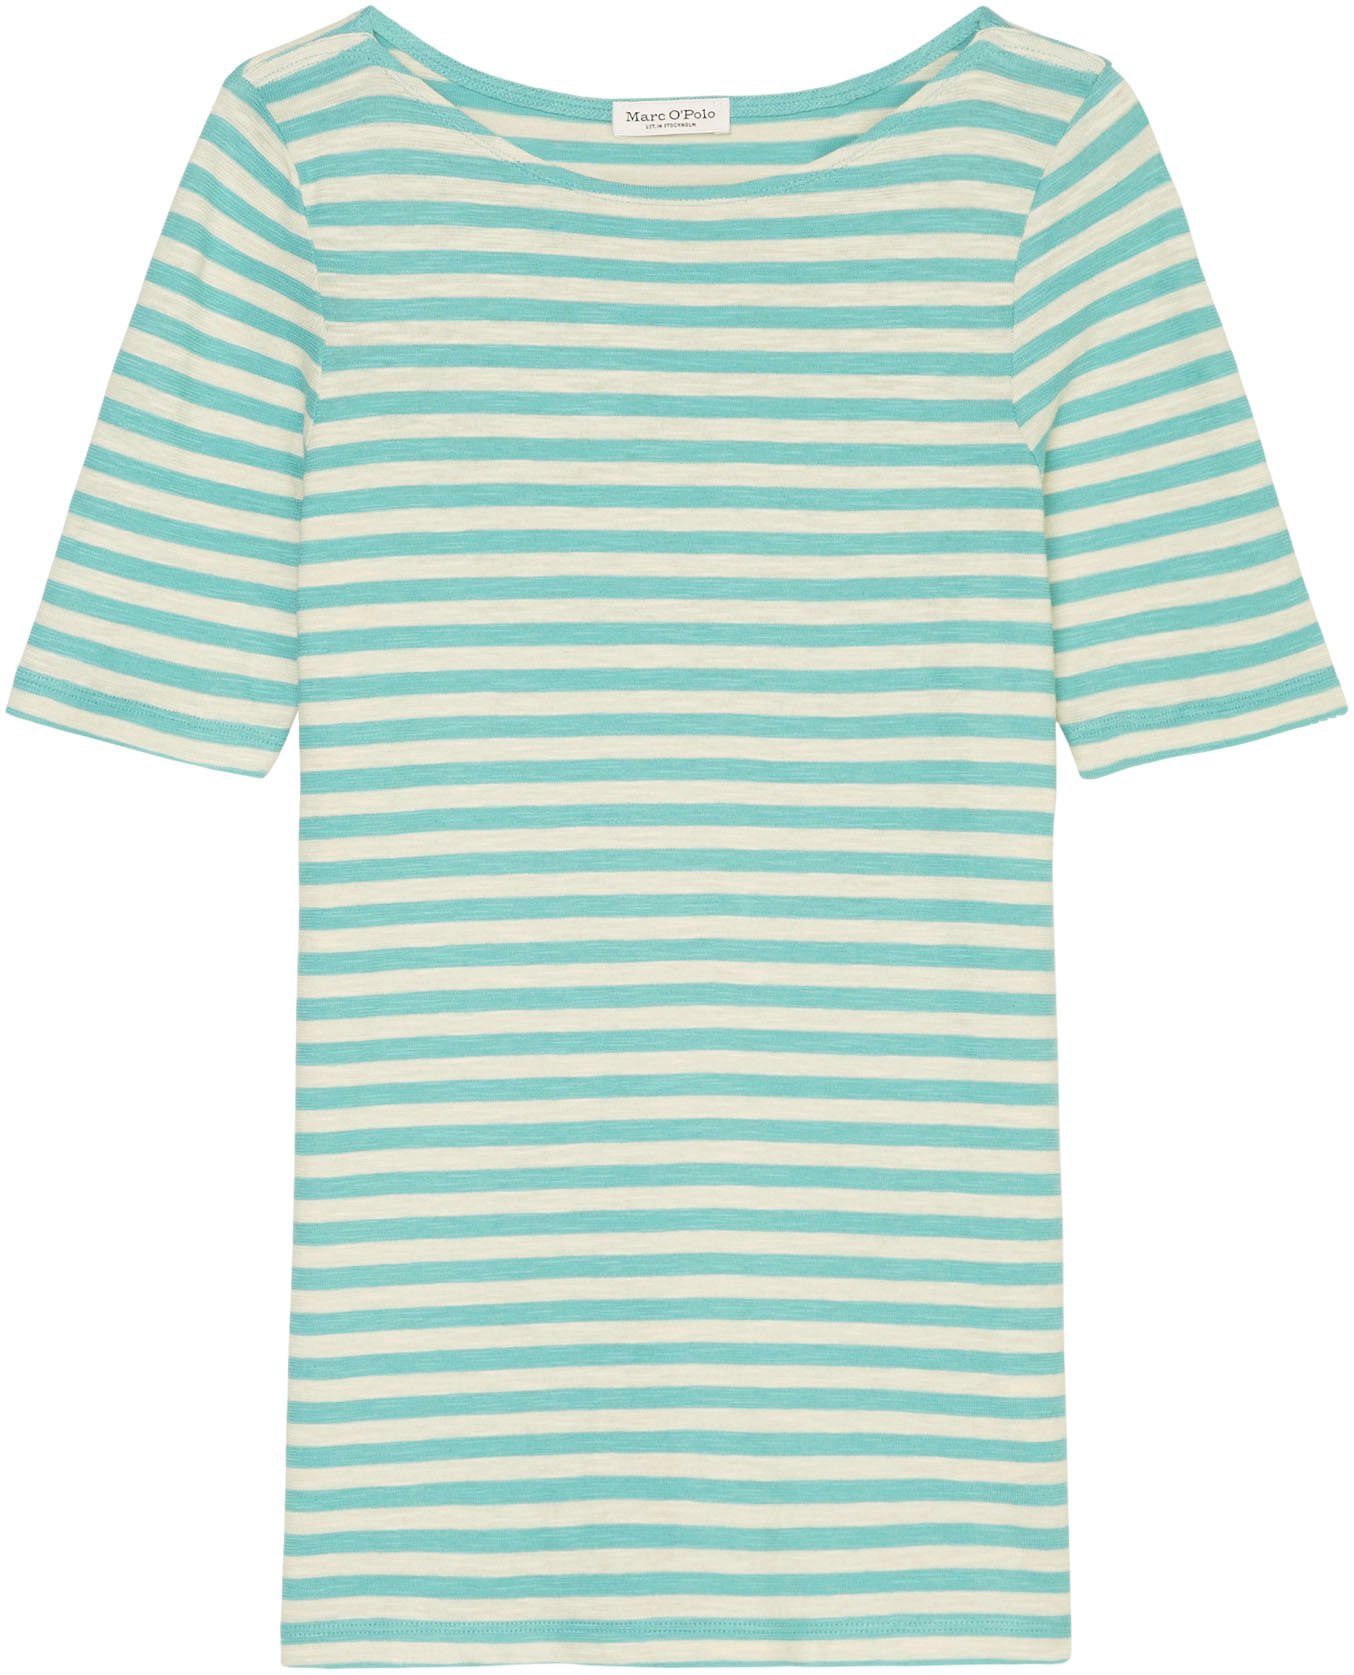 O'Polo Marc blue multi/sea T-Shirt